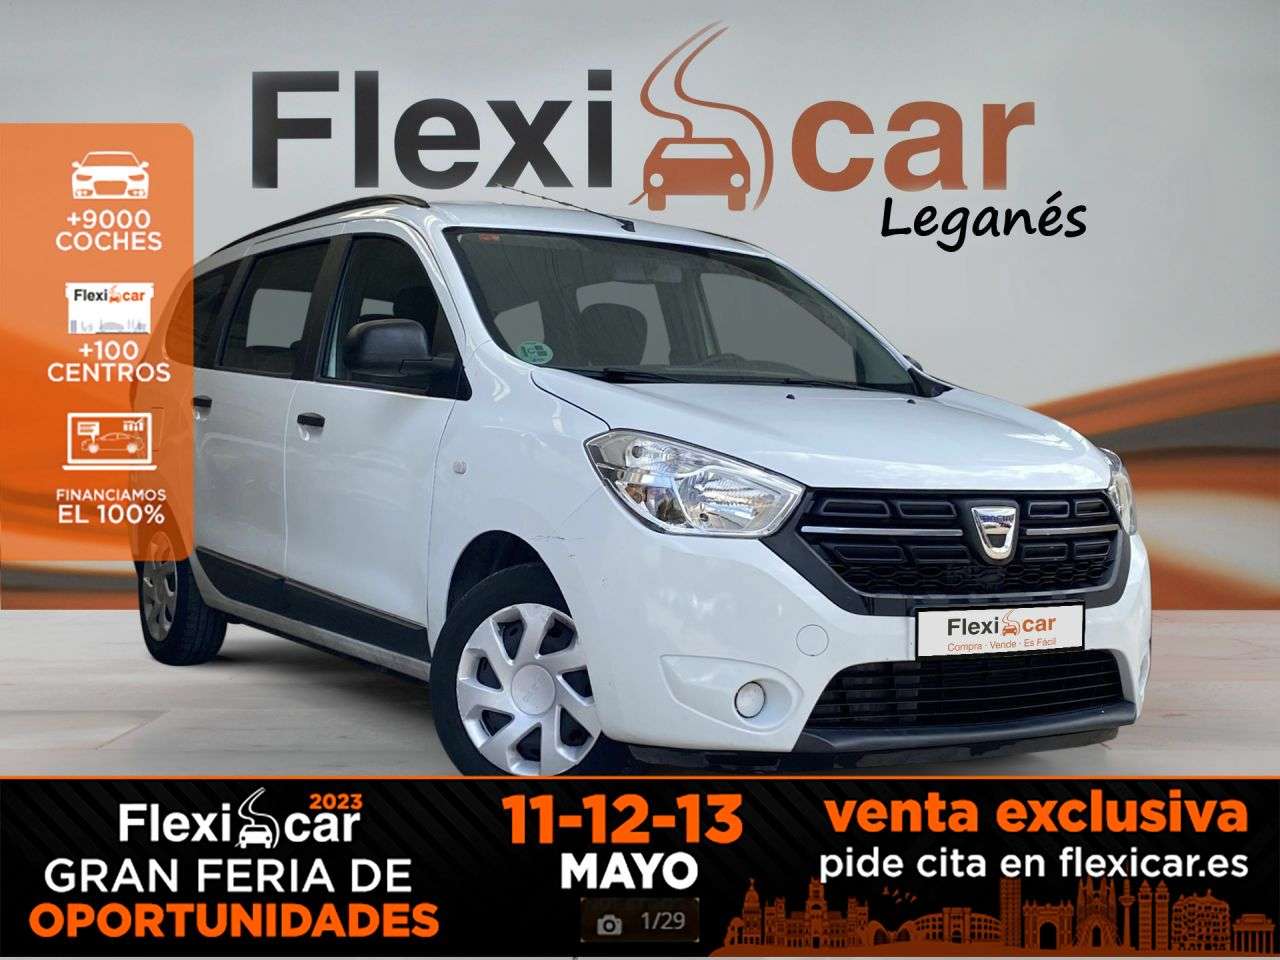 Dacia Lodgy Van in White used in L'Hospitalet de Llobregat for € 13,290.-